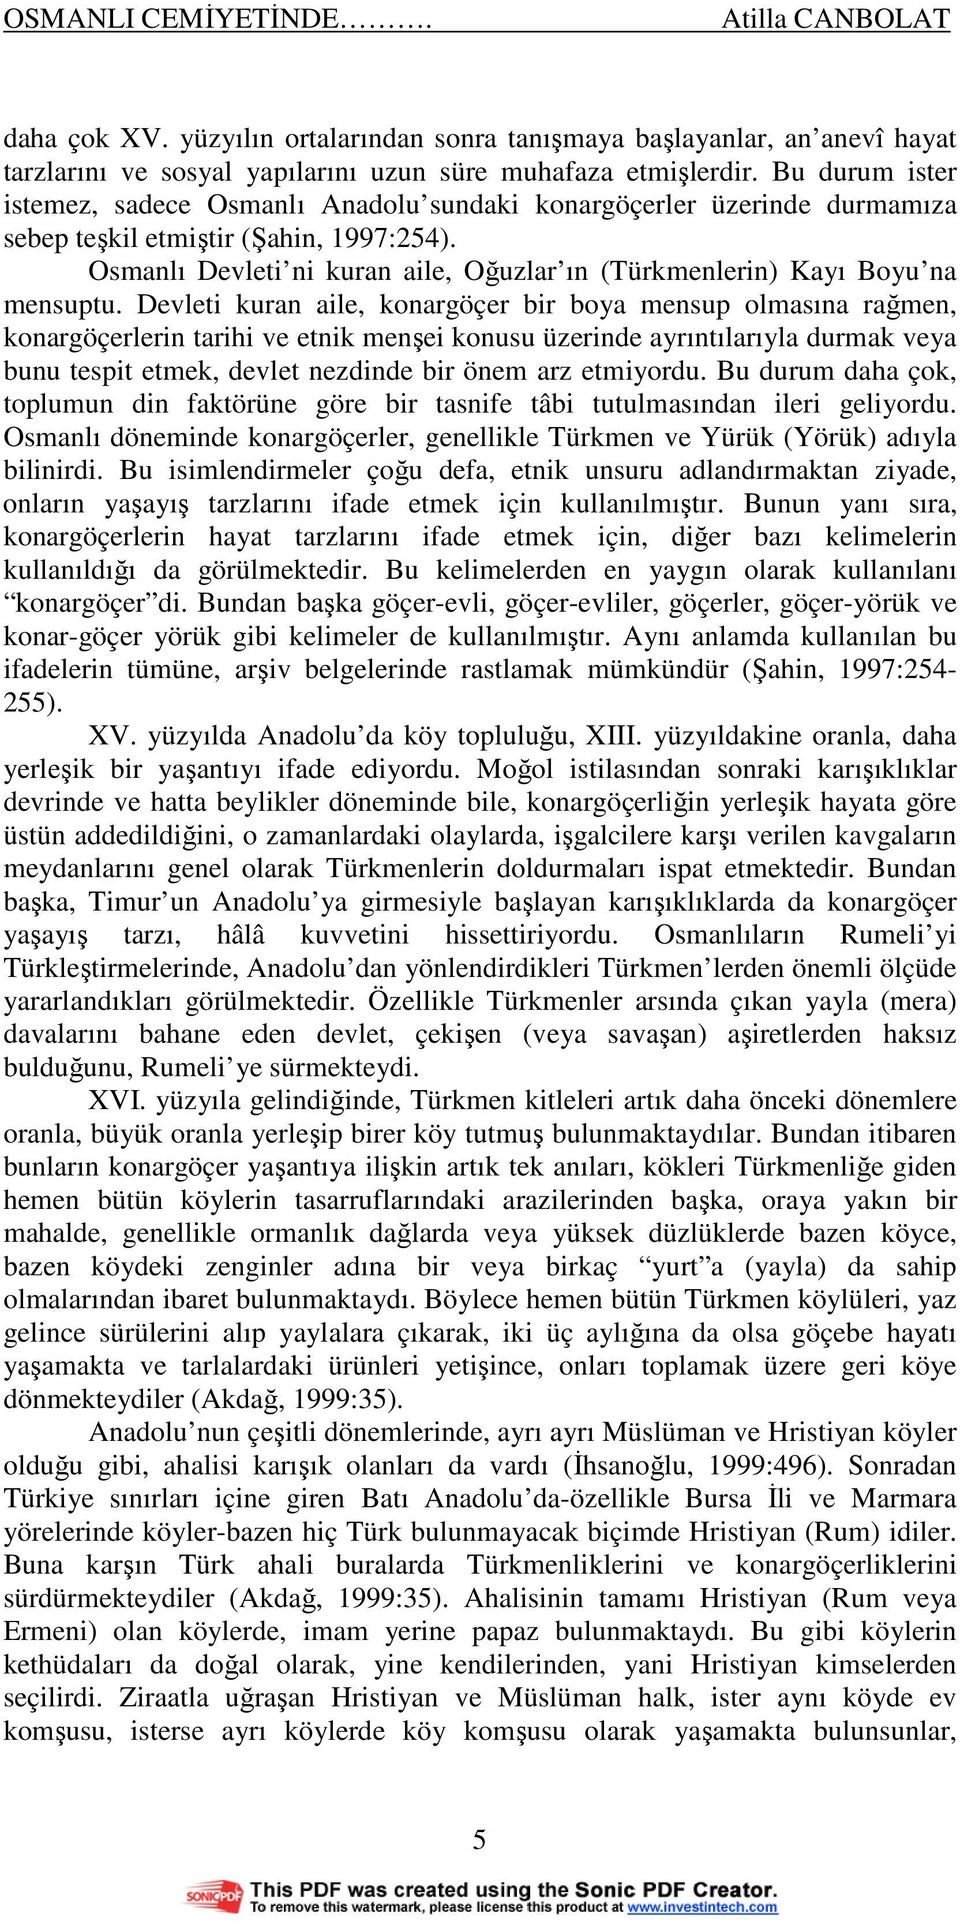 Osmanlı Devleti ni kuran aile, Oğuzlar ın (Türkmenlerin) Kayı Boyu na mensuptu.